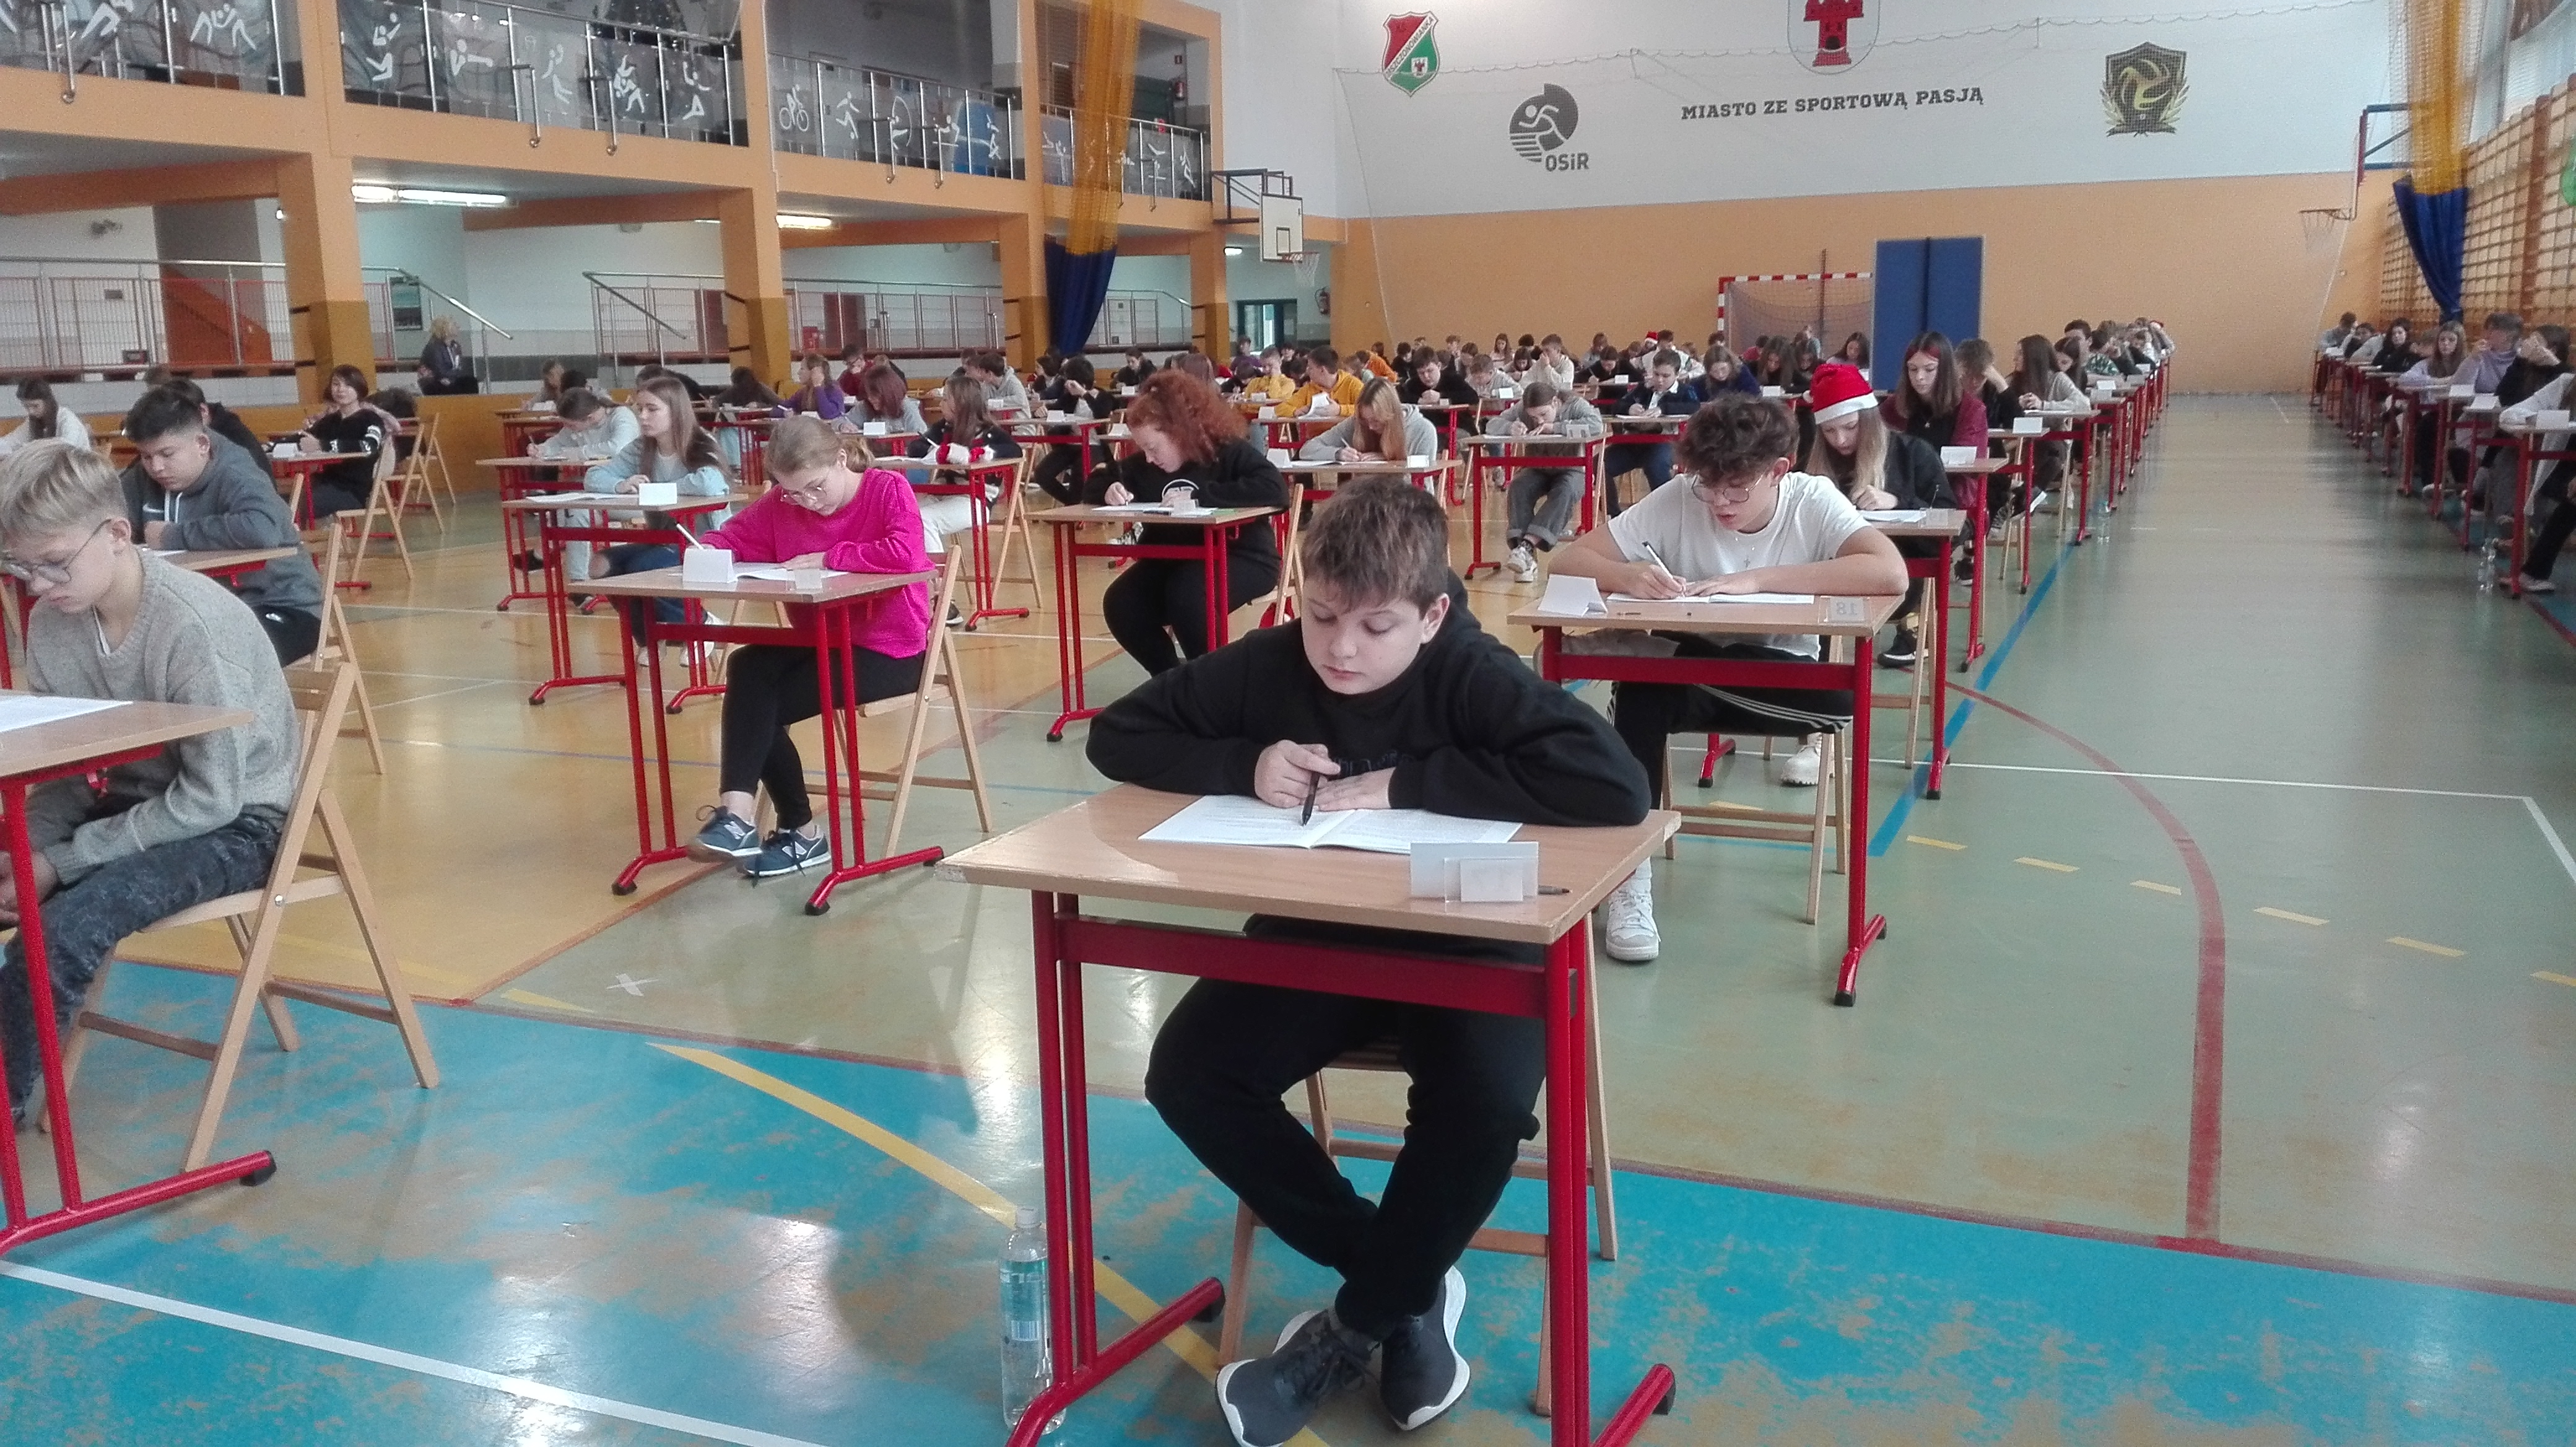 Uczniowie siedzący w pojedynczych ławkach na hali sportowej i piszący próbny egzamin.